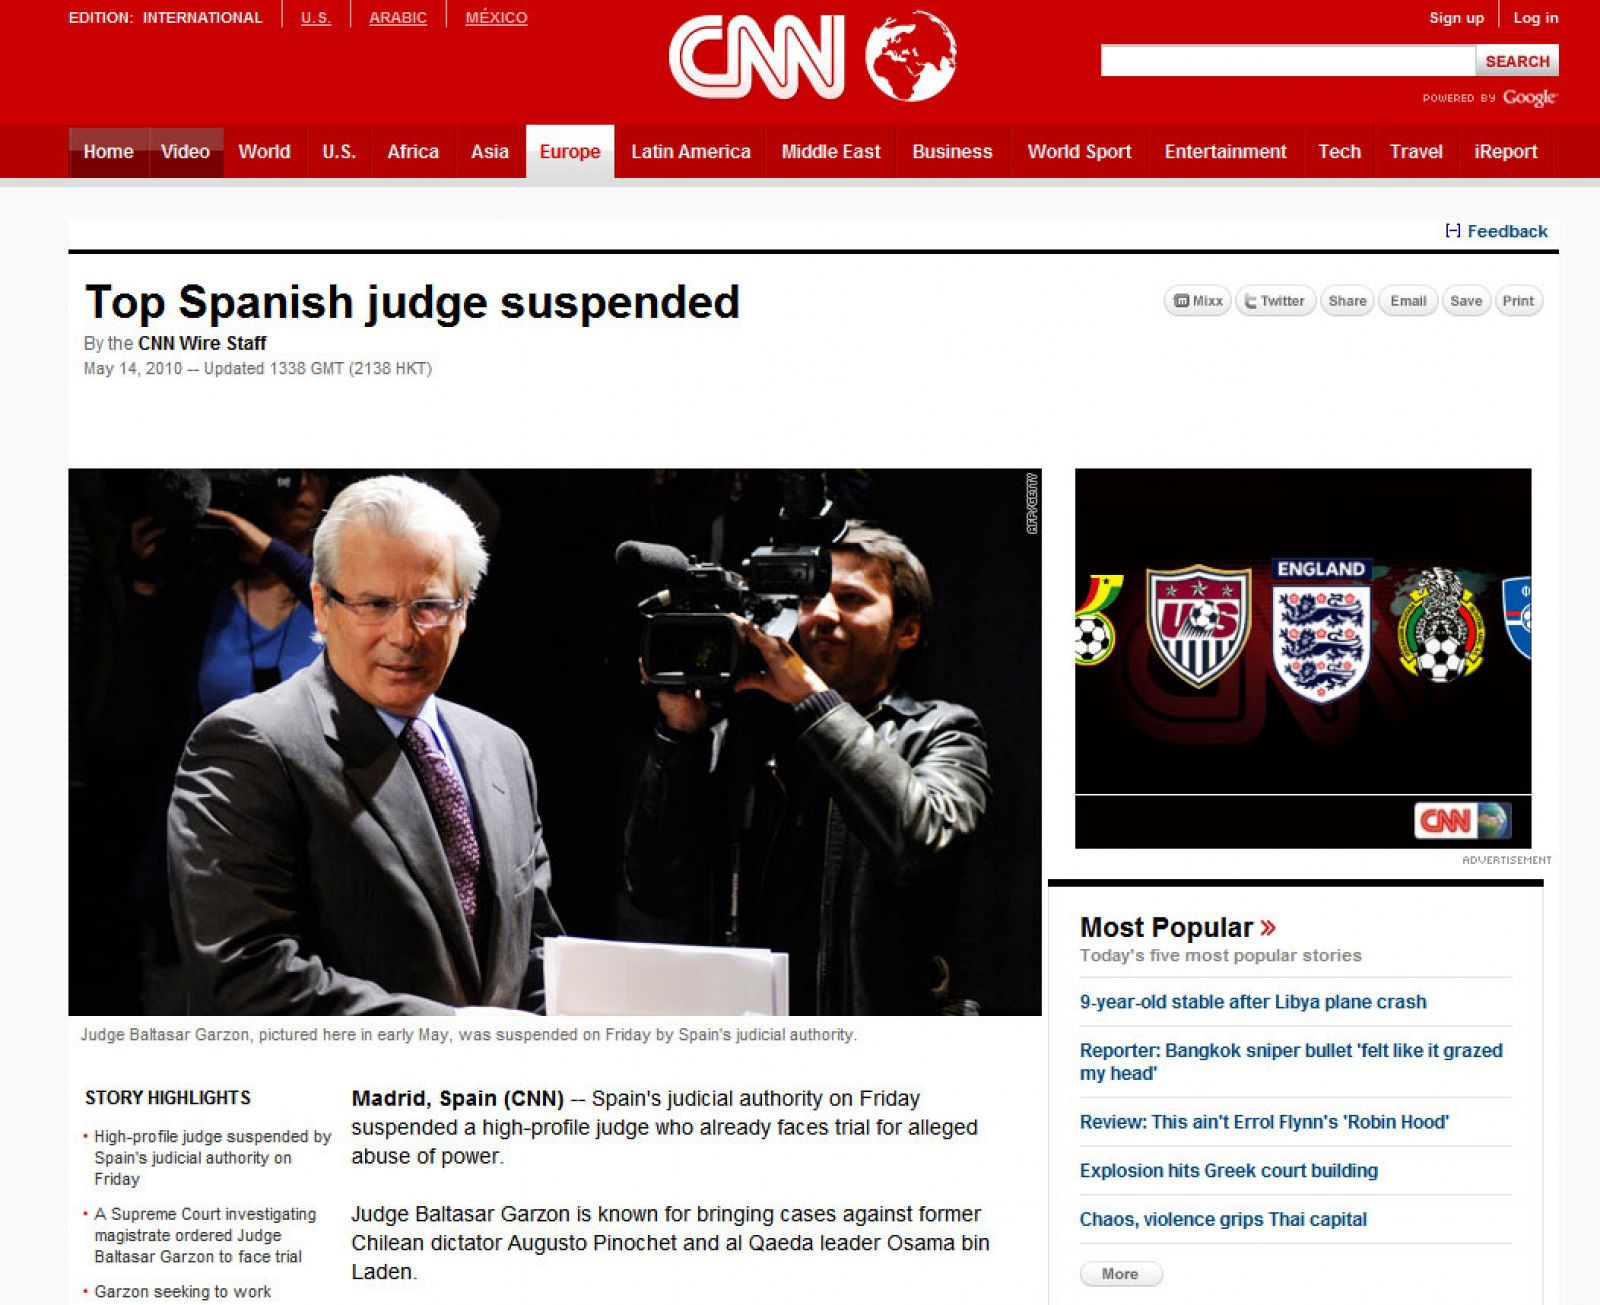 La CNN es uno de los medios internacionales que informan sobre la suspensión del juez español.